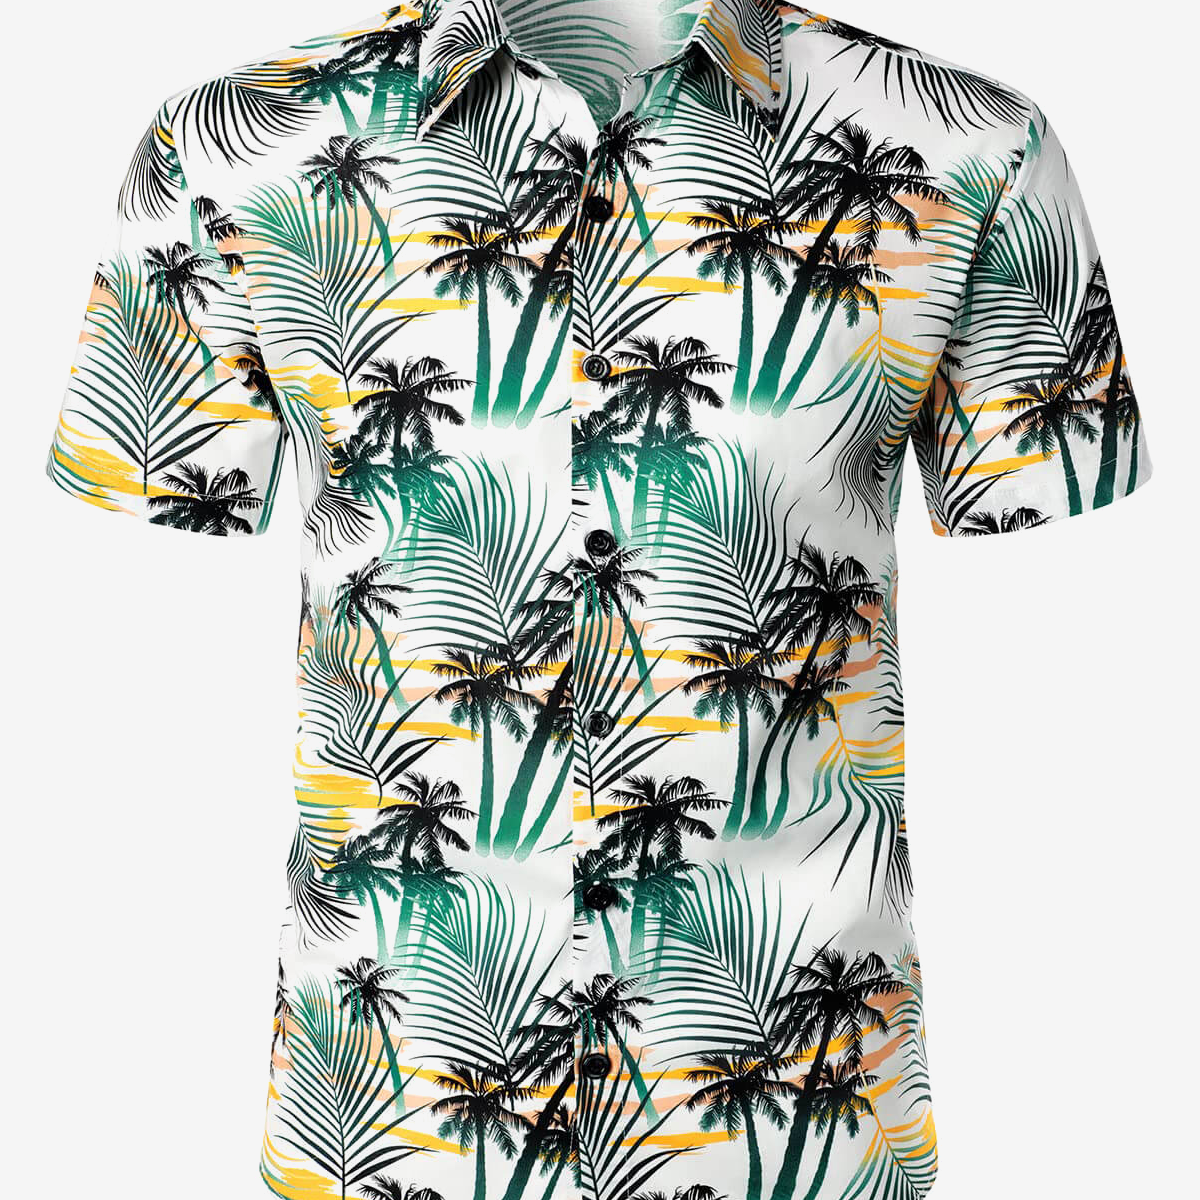 Men's Cotton Beach Summer Hawaiian Holiday Tropical Button Up Short Sleeve Shirt